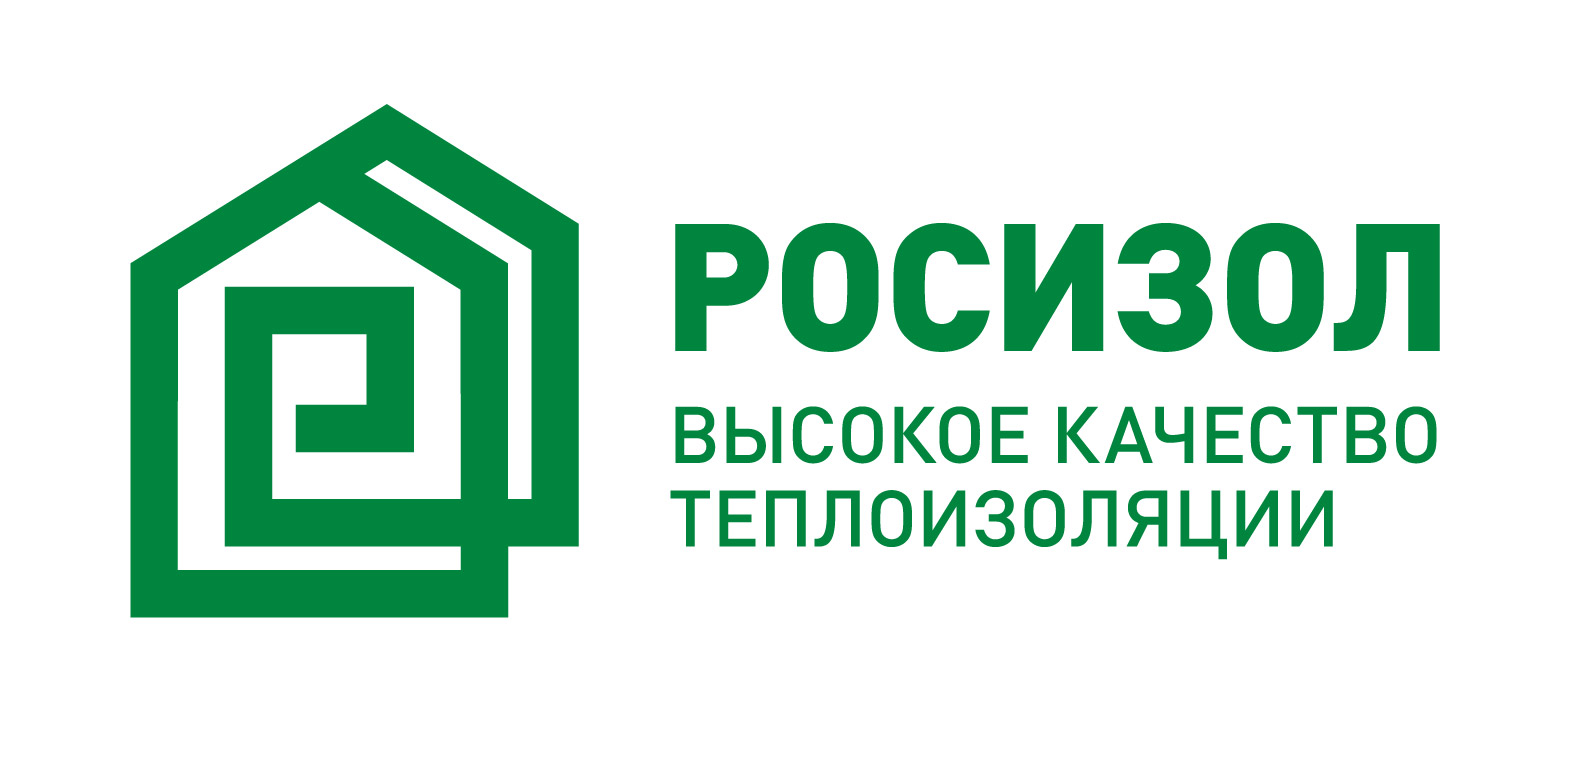 Ассоциация российских производителей современной минеральной изоляции «Росизол»  создала свой знак качества - Знак Качества «Росизол».